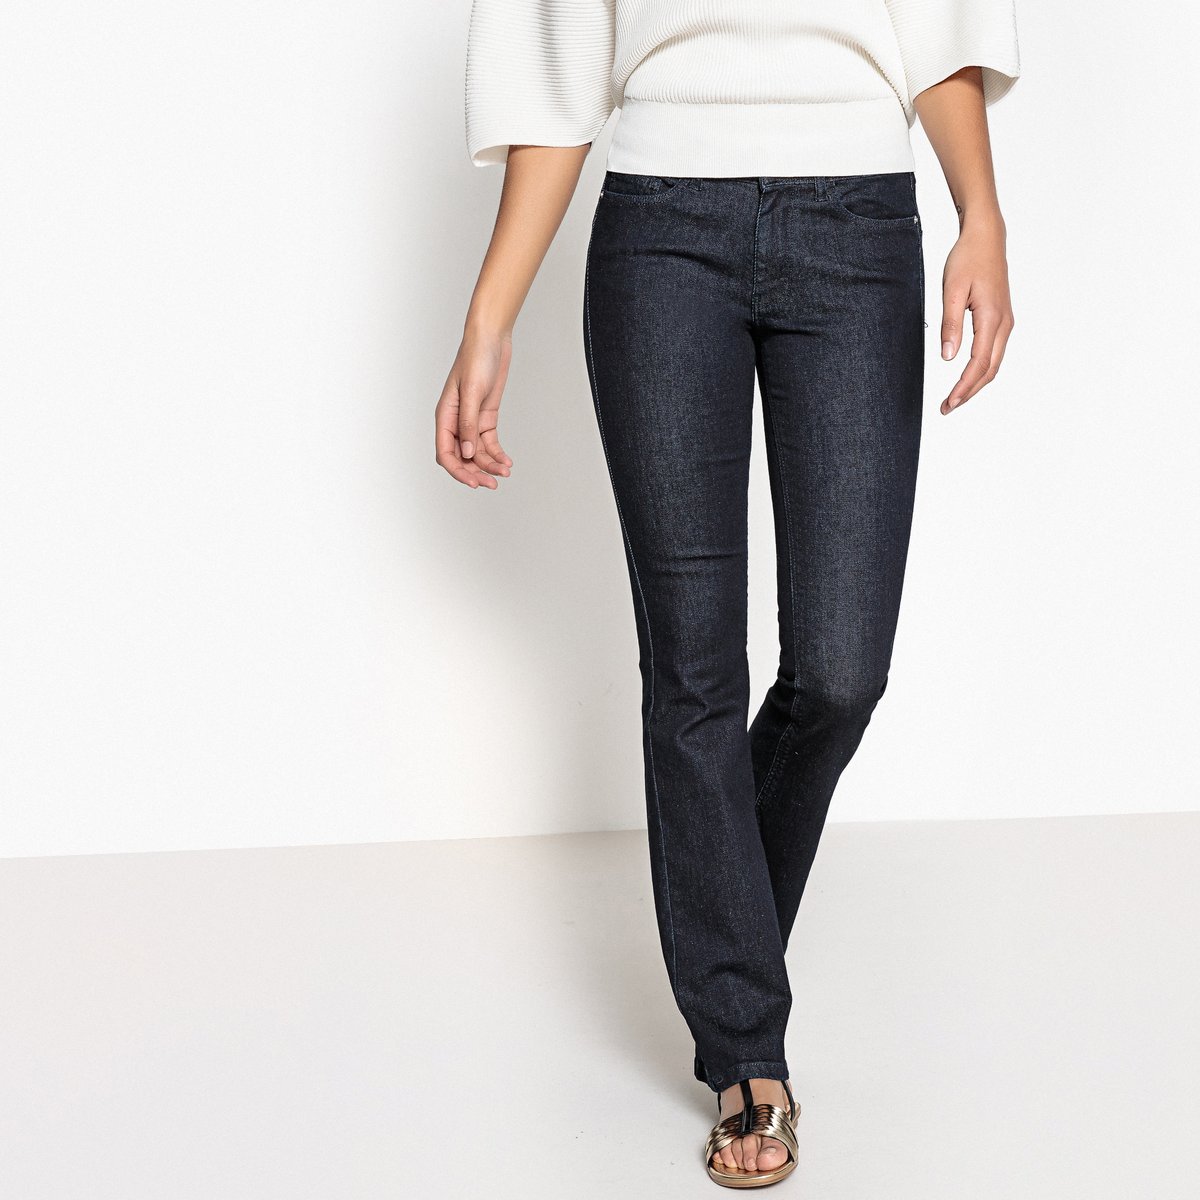 Джинсы collection. Темно светлые джинсы. Черные джинсы с потертостями женские. Обувь под джинсы буткат. Alivi collection джинсы.